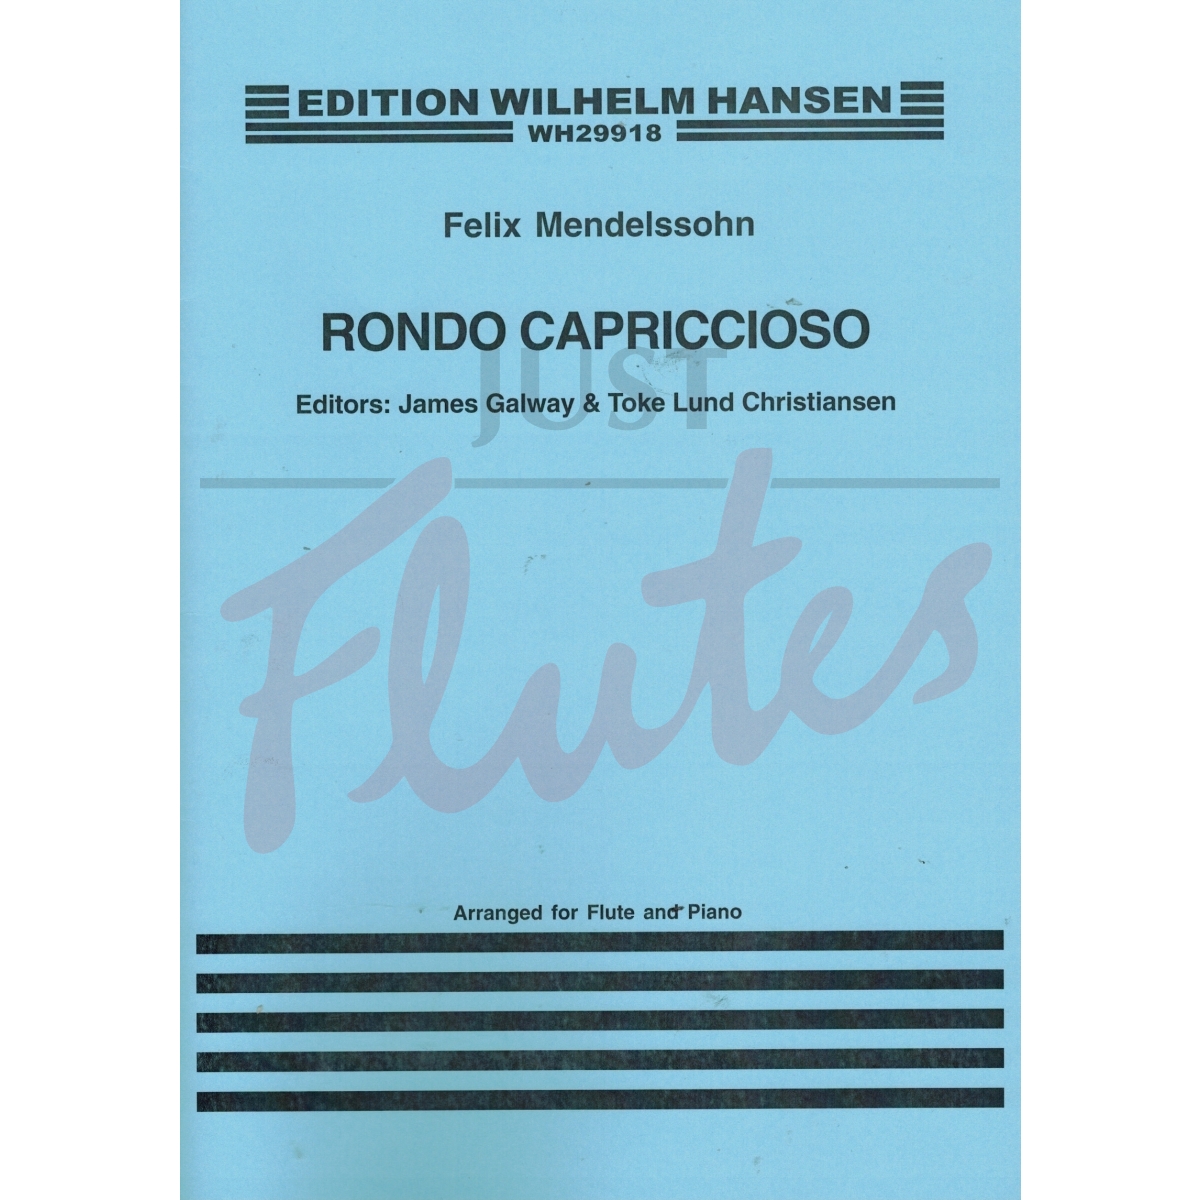 Rondo Capriccioso for Flute and Piano